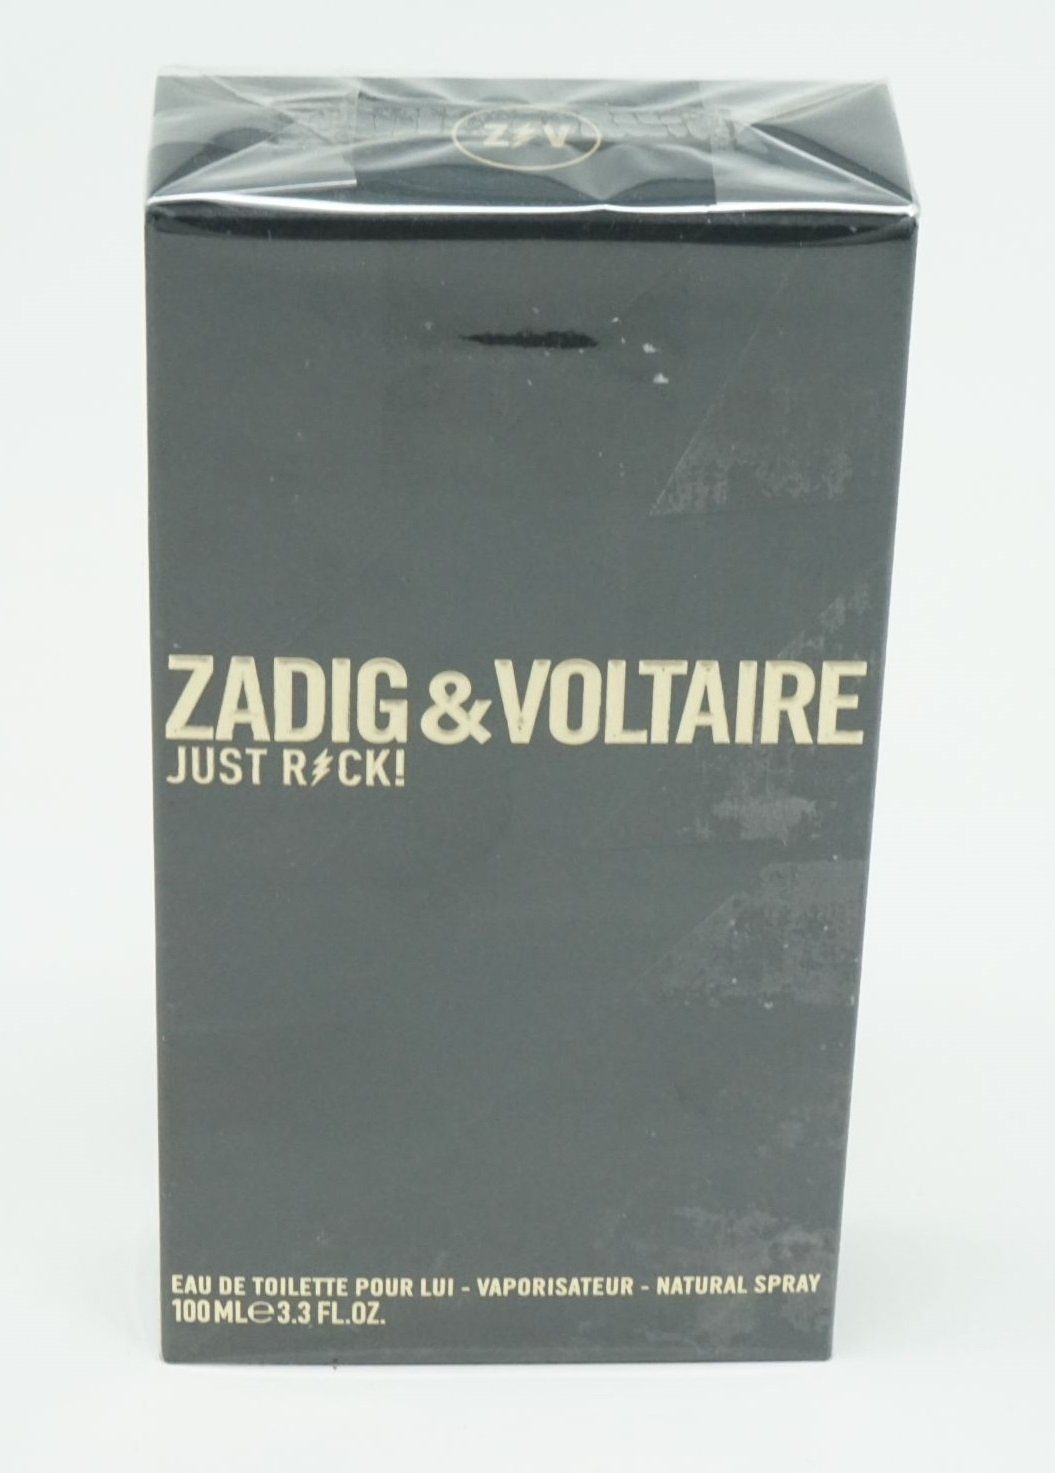 ZADIG & ml Voltaire de Eau Toilette de Pour Lui & Rock Toilette Just Zadig VOLTAIRE Eau 100